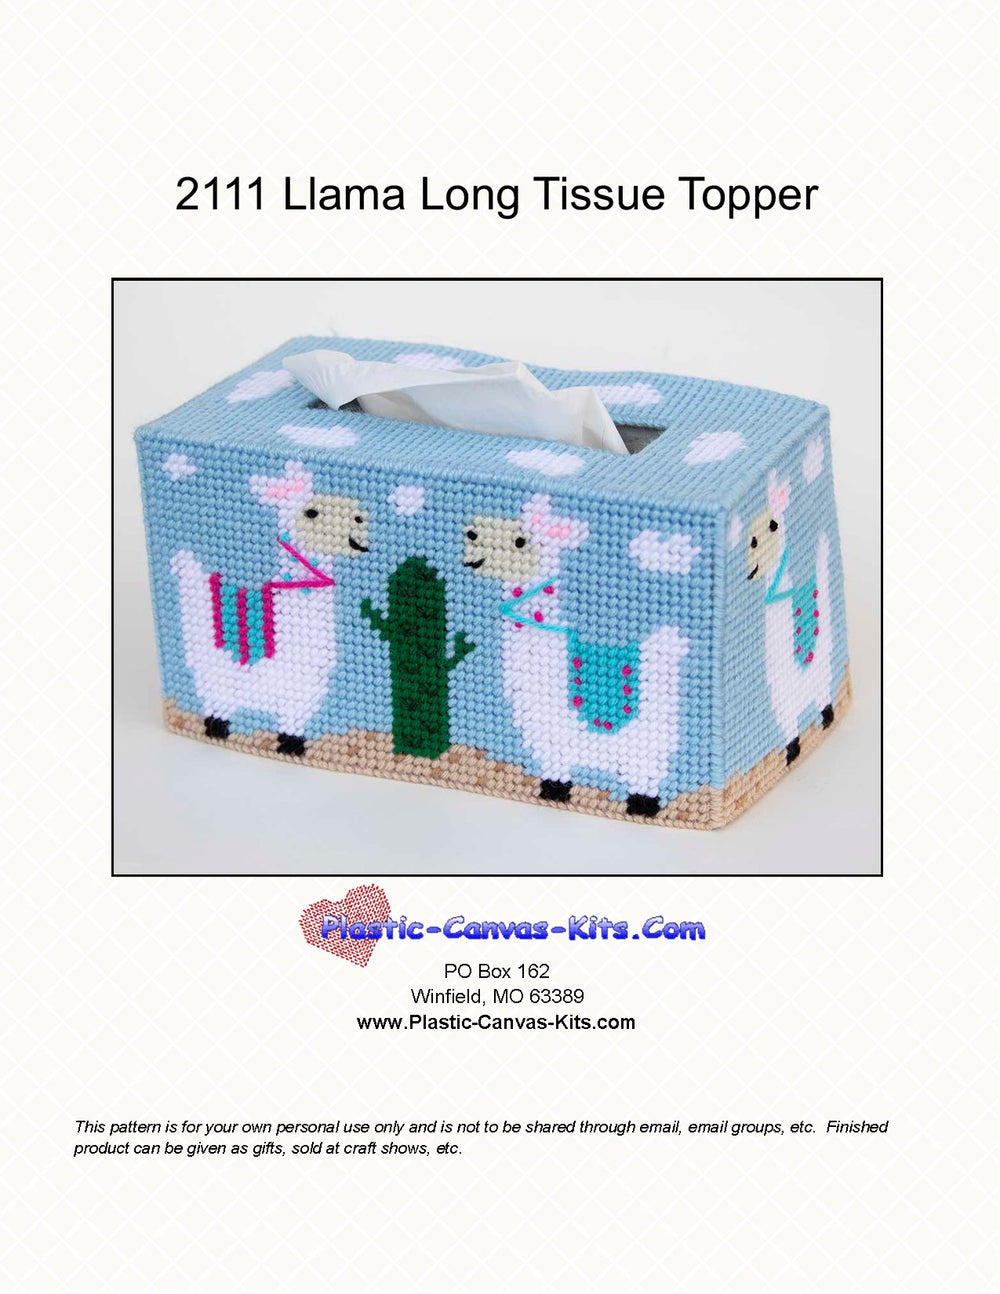 Llama Long Tissue Topper